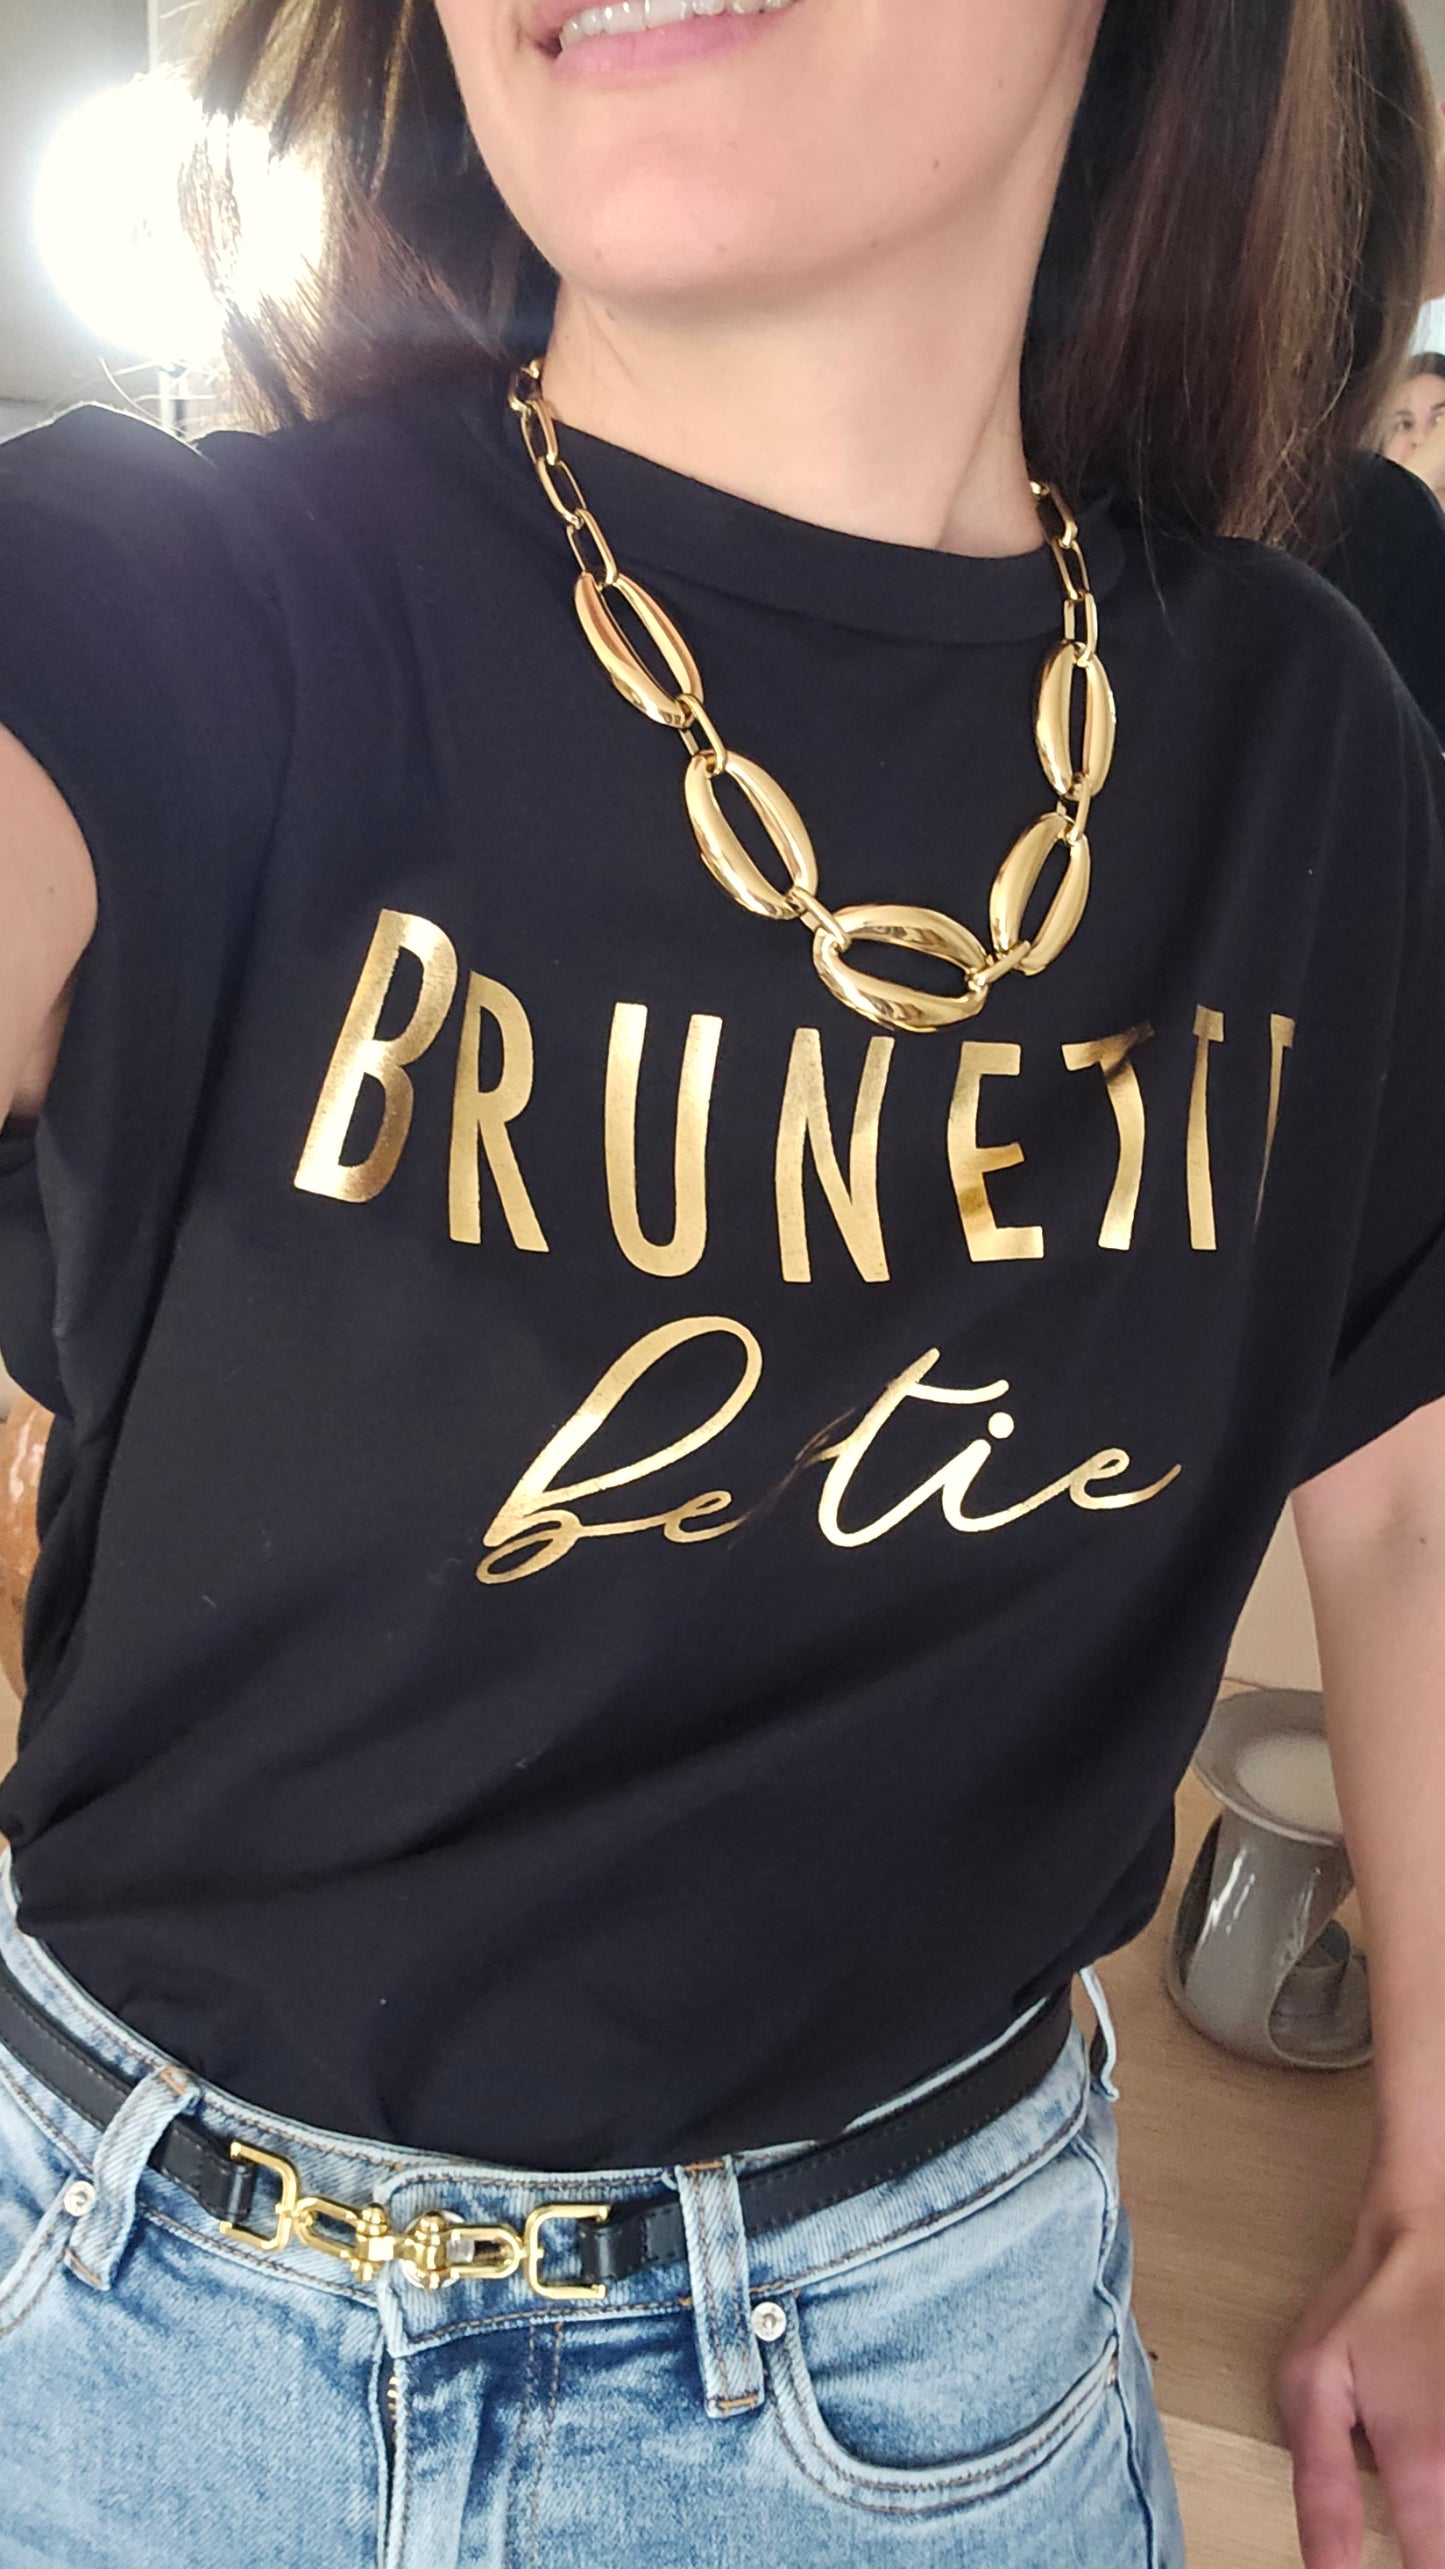 Tee-shirt Brunette